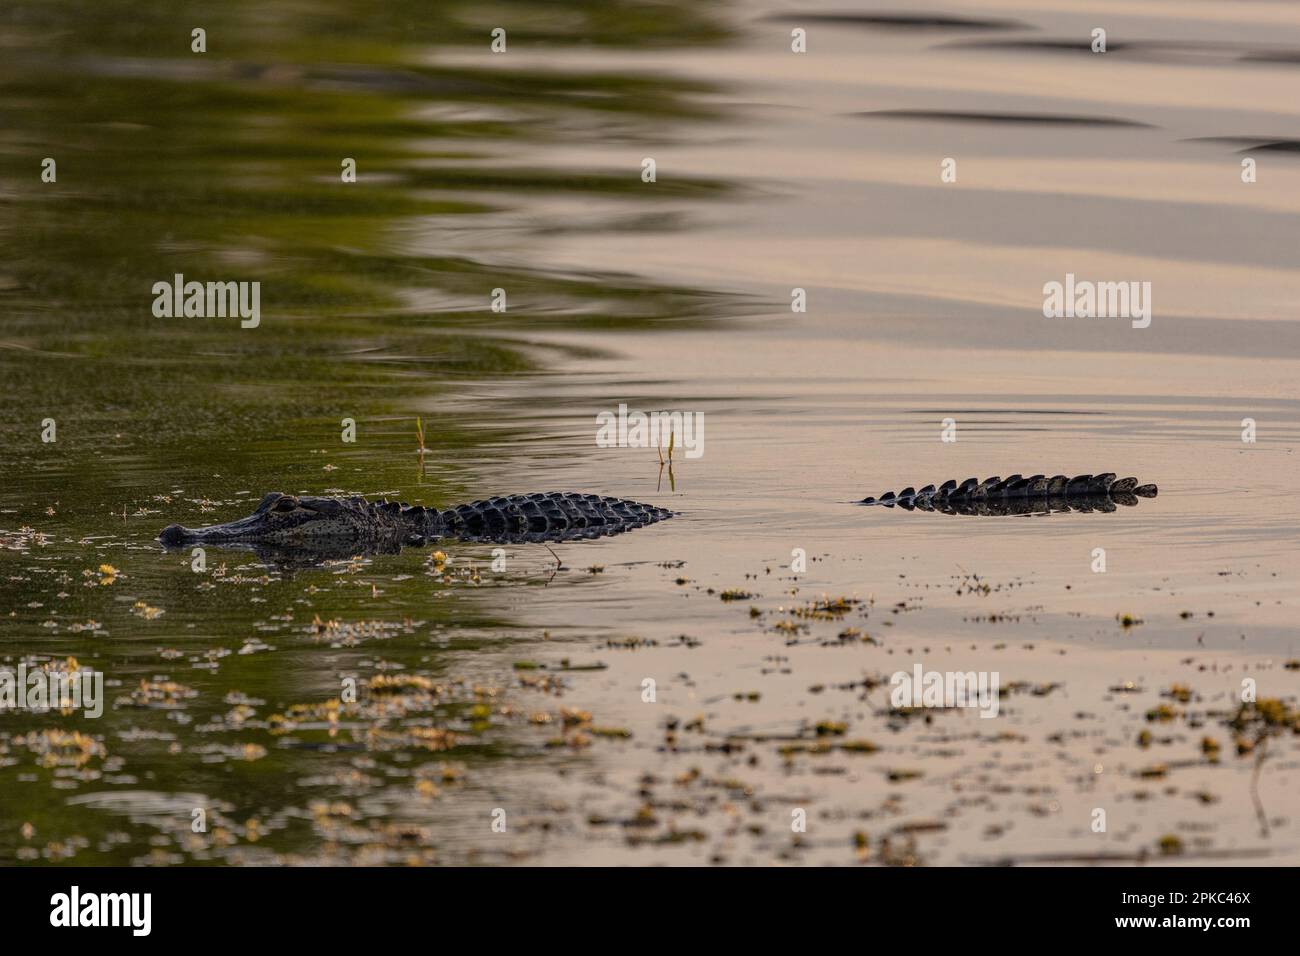 un alligatore sta nuotando nell'acqua verde con l'erbaccia, l'acqua è increspata, si nasconde Foto Stock